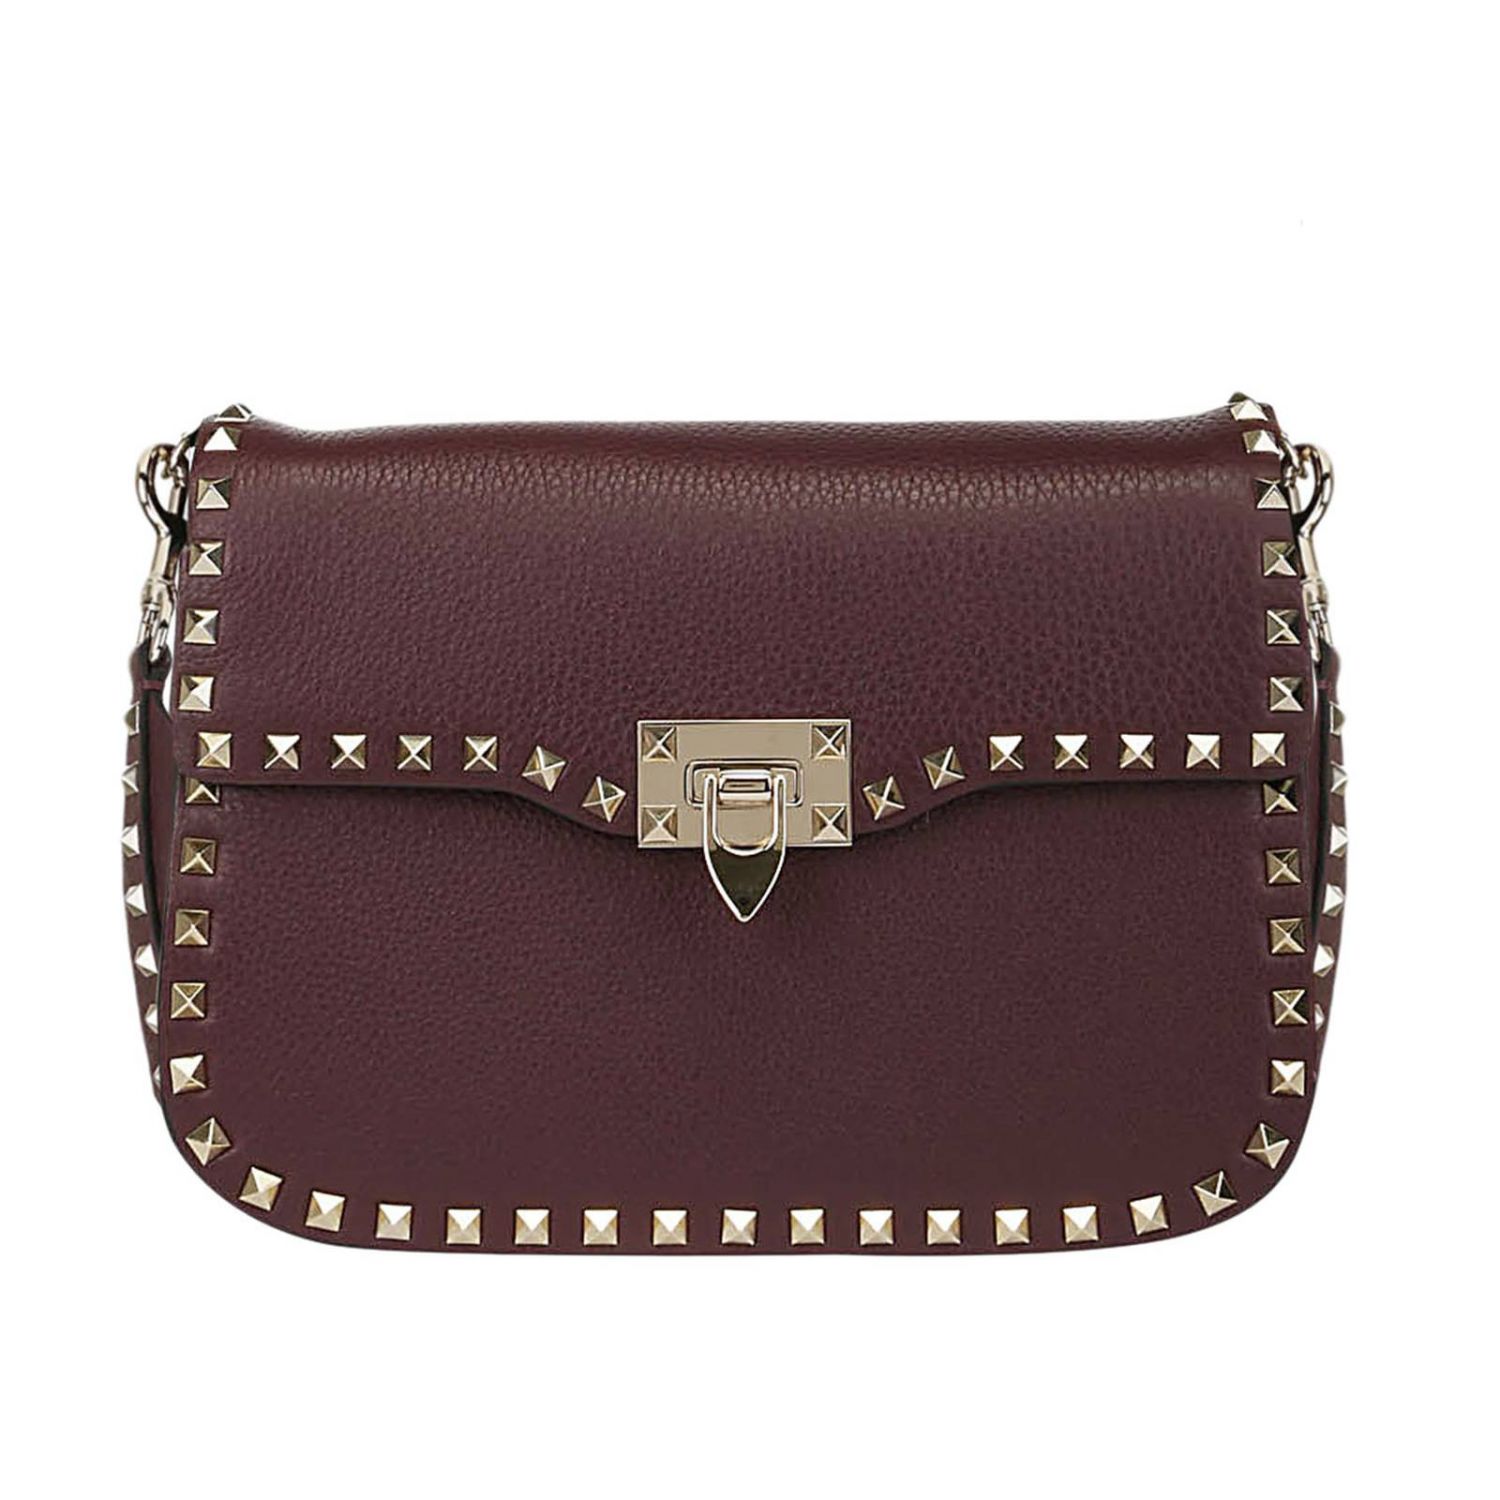 Valentino Garavani Outlet: Rockstud shoulder bag in leather | Crossbody ...